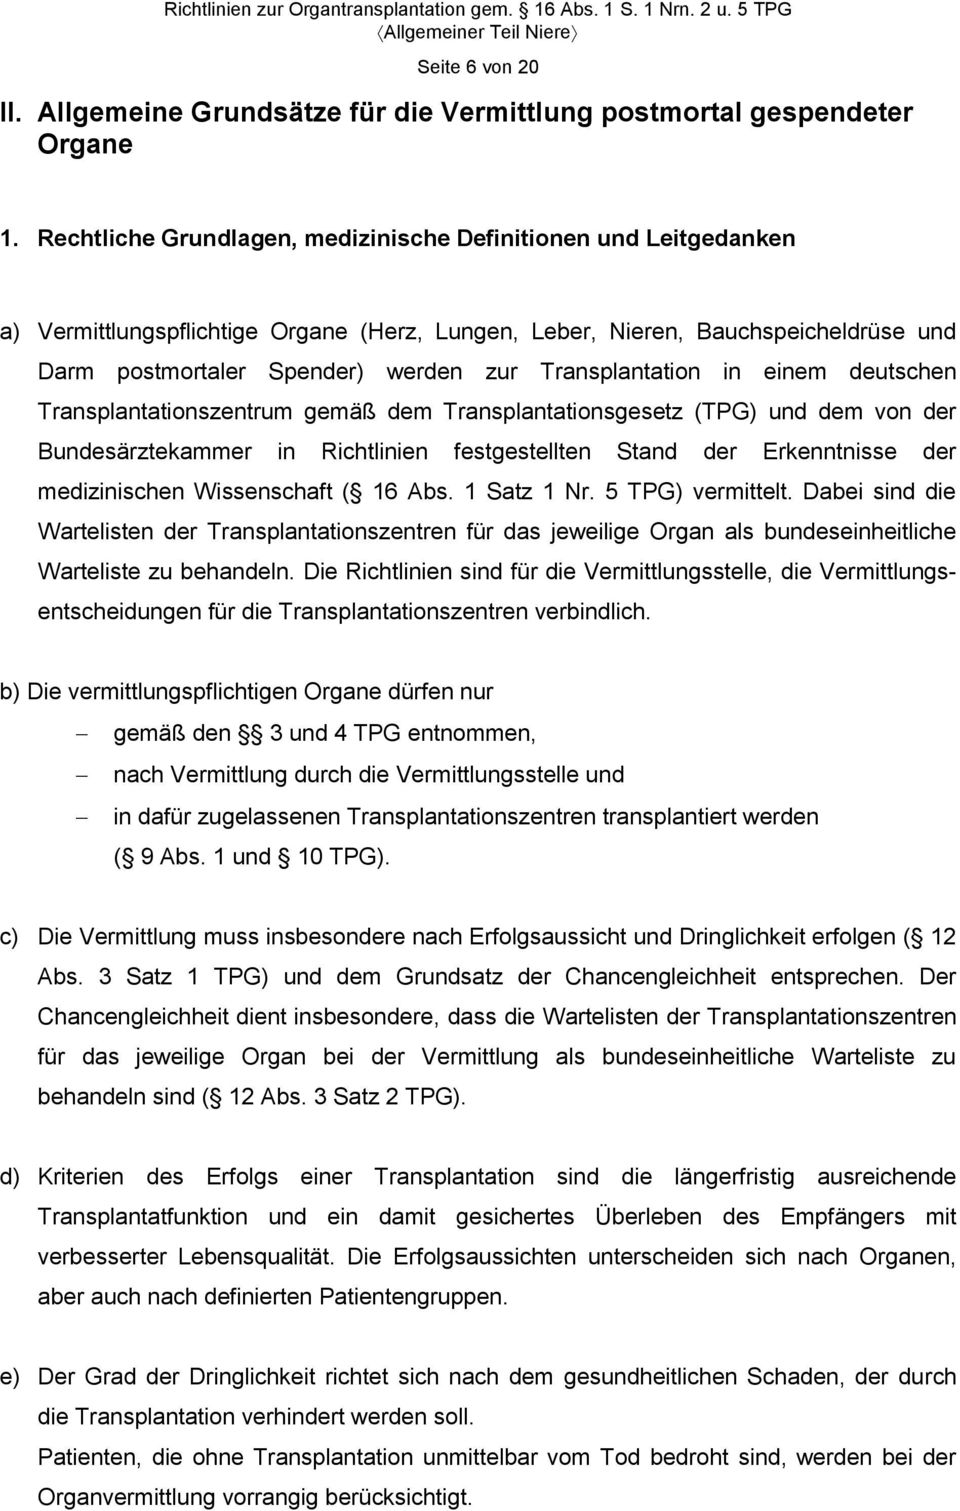 Transplantation in einem deutschen Transplantationszentrum gemäß dem Transplantationsgesetz (TPG) und dem von der Bundesärztekammer in Richtlinien festgestellten Stand der Erkenntnisse der